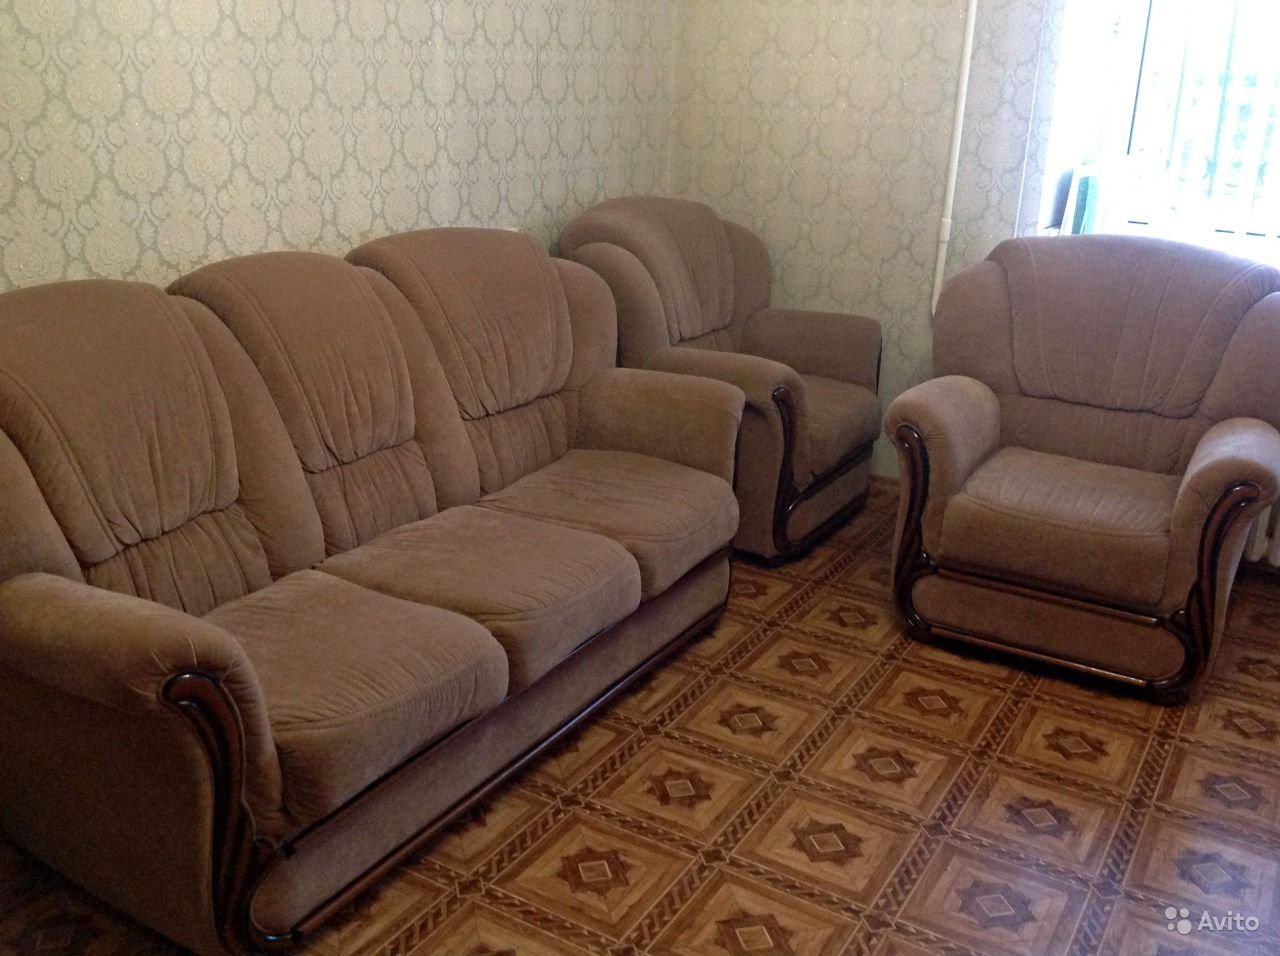 Авито мебель кресло диван. Комплект диван и 2 кресла. Комплект мебели диван и два кресла. Комплект диван и 2 кресла до 20000 рублей. Комплект диван и 2 кресла мягкие серый.